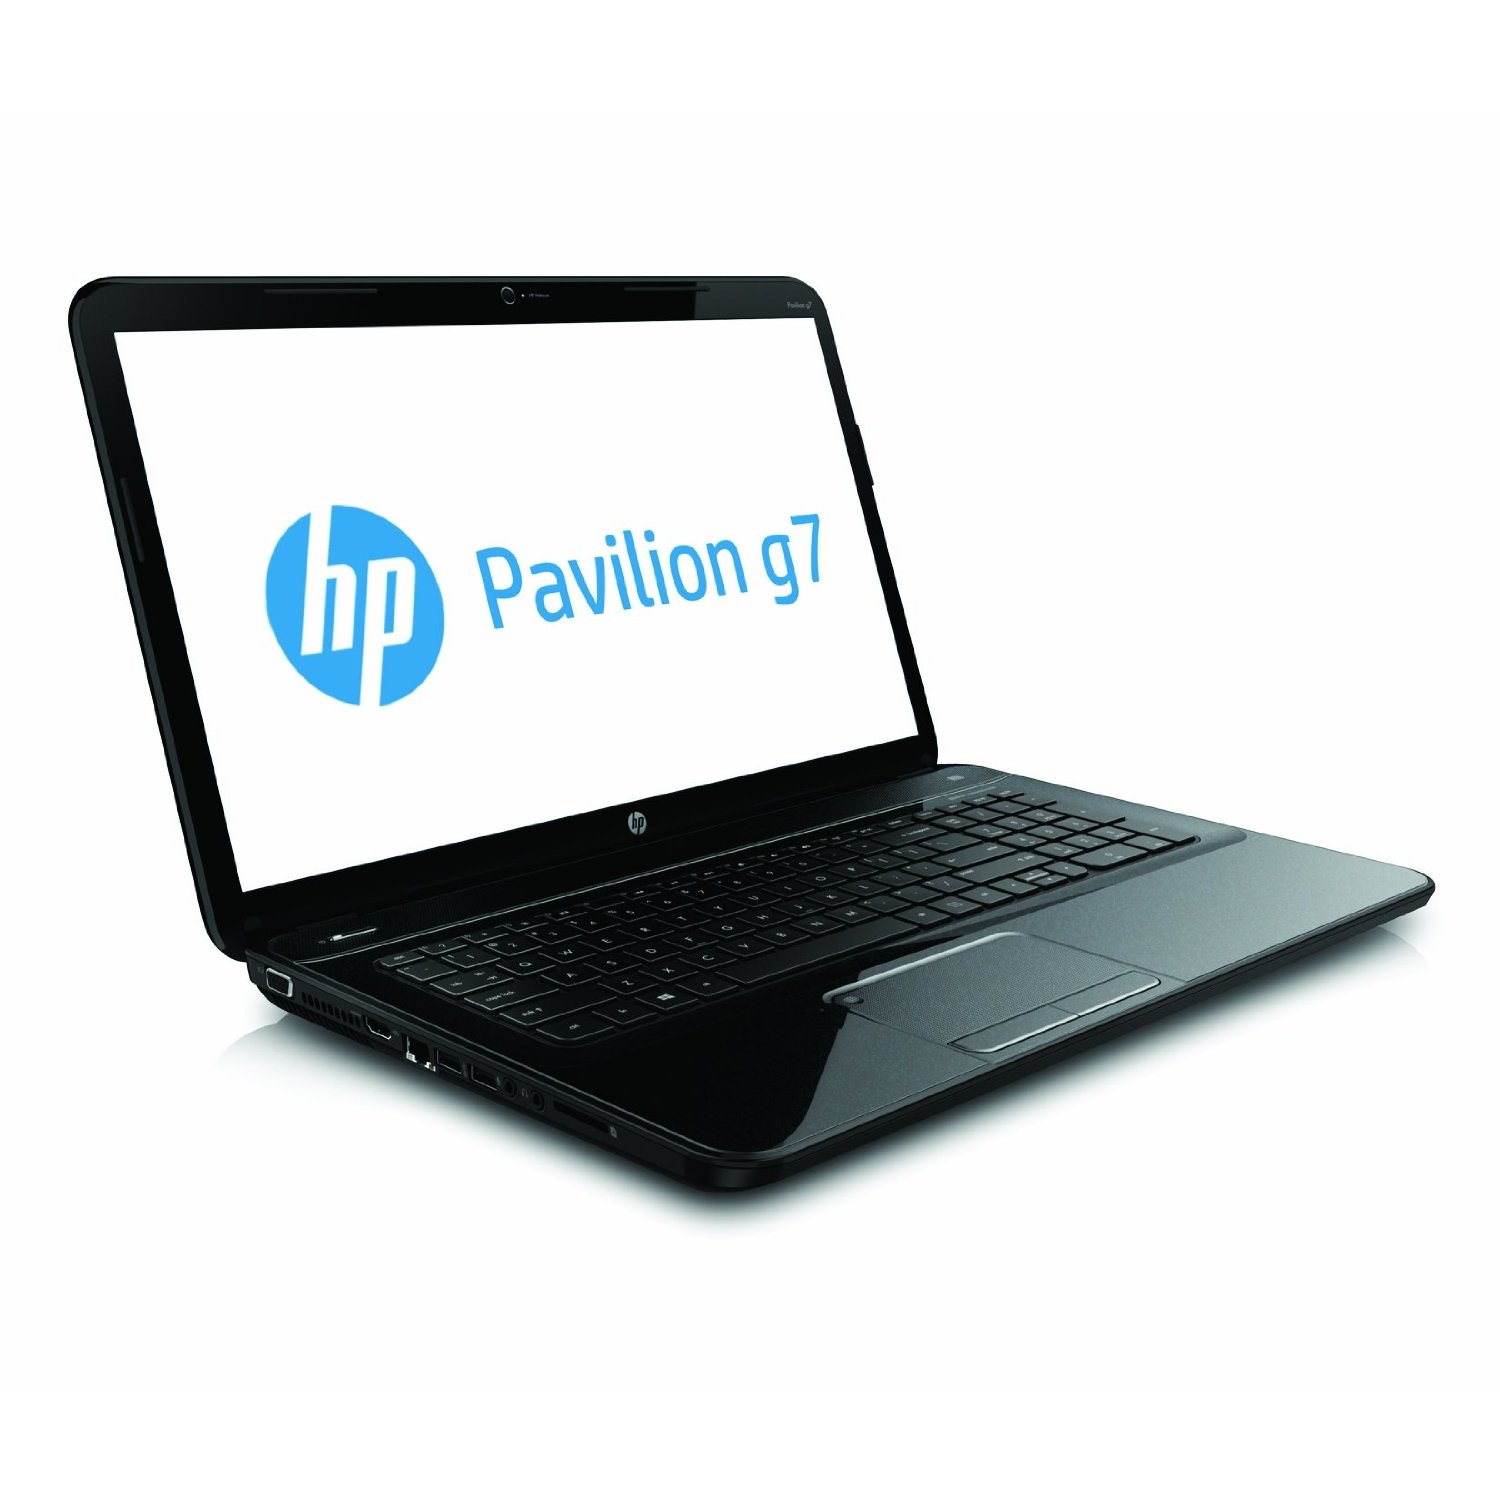 HP Pavilion g7-2240us Review